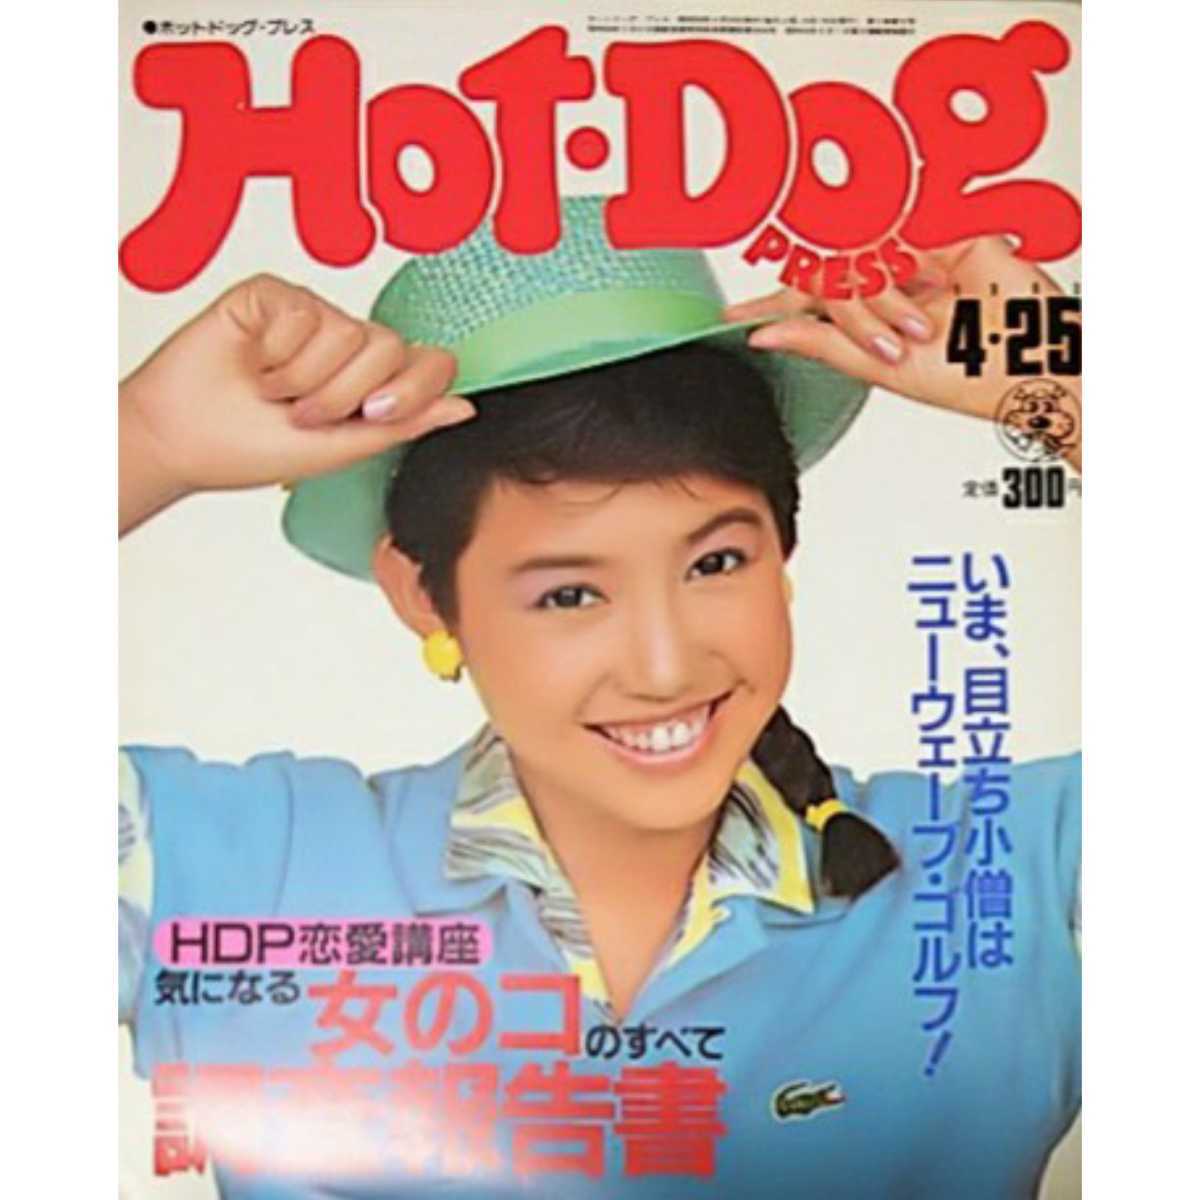 ◎【雑誌】ホットドッグプレス/Hot Dog PRESS 1983年4月25日号_画像1